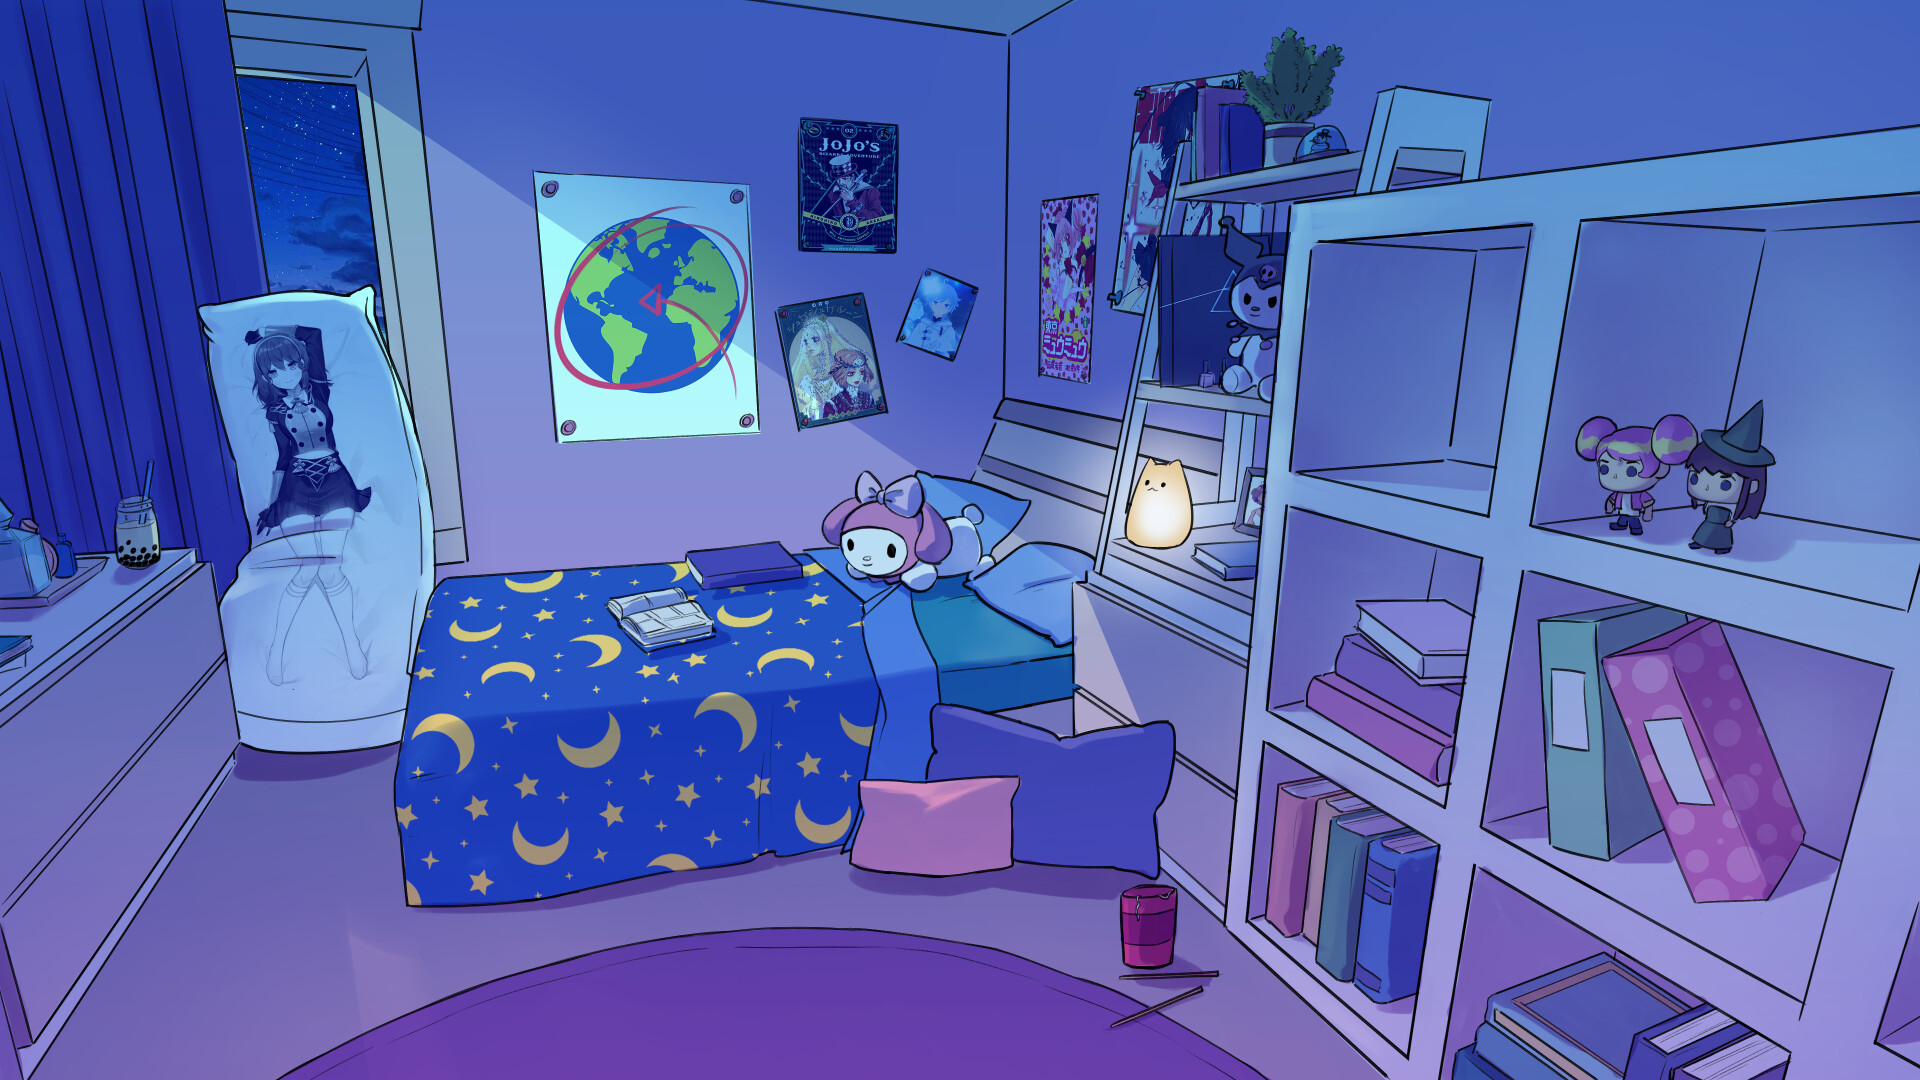 ArtStation - Lumi's room